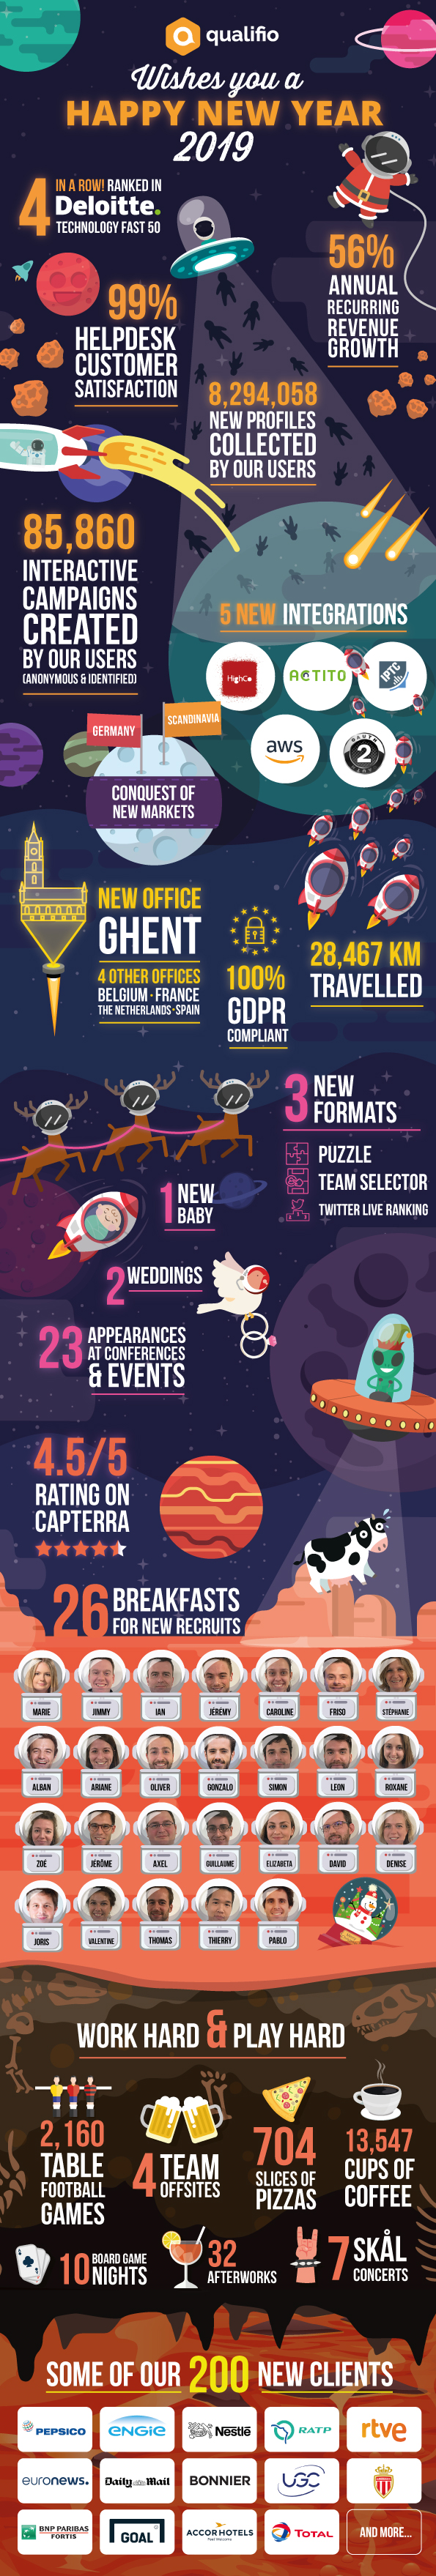 infographic-qualifio-2018